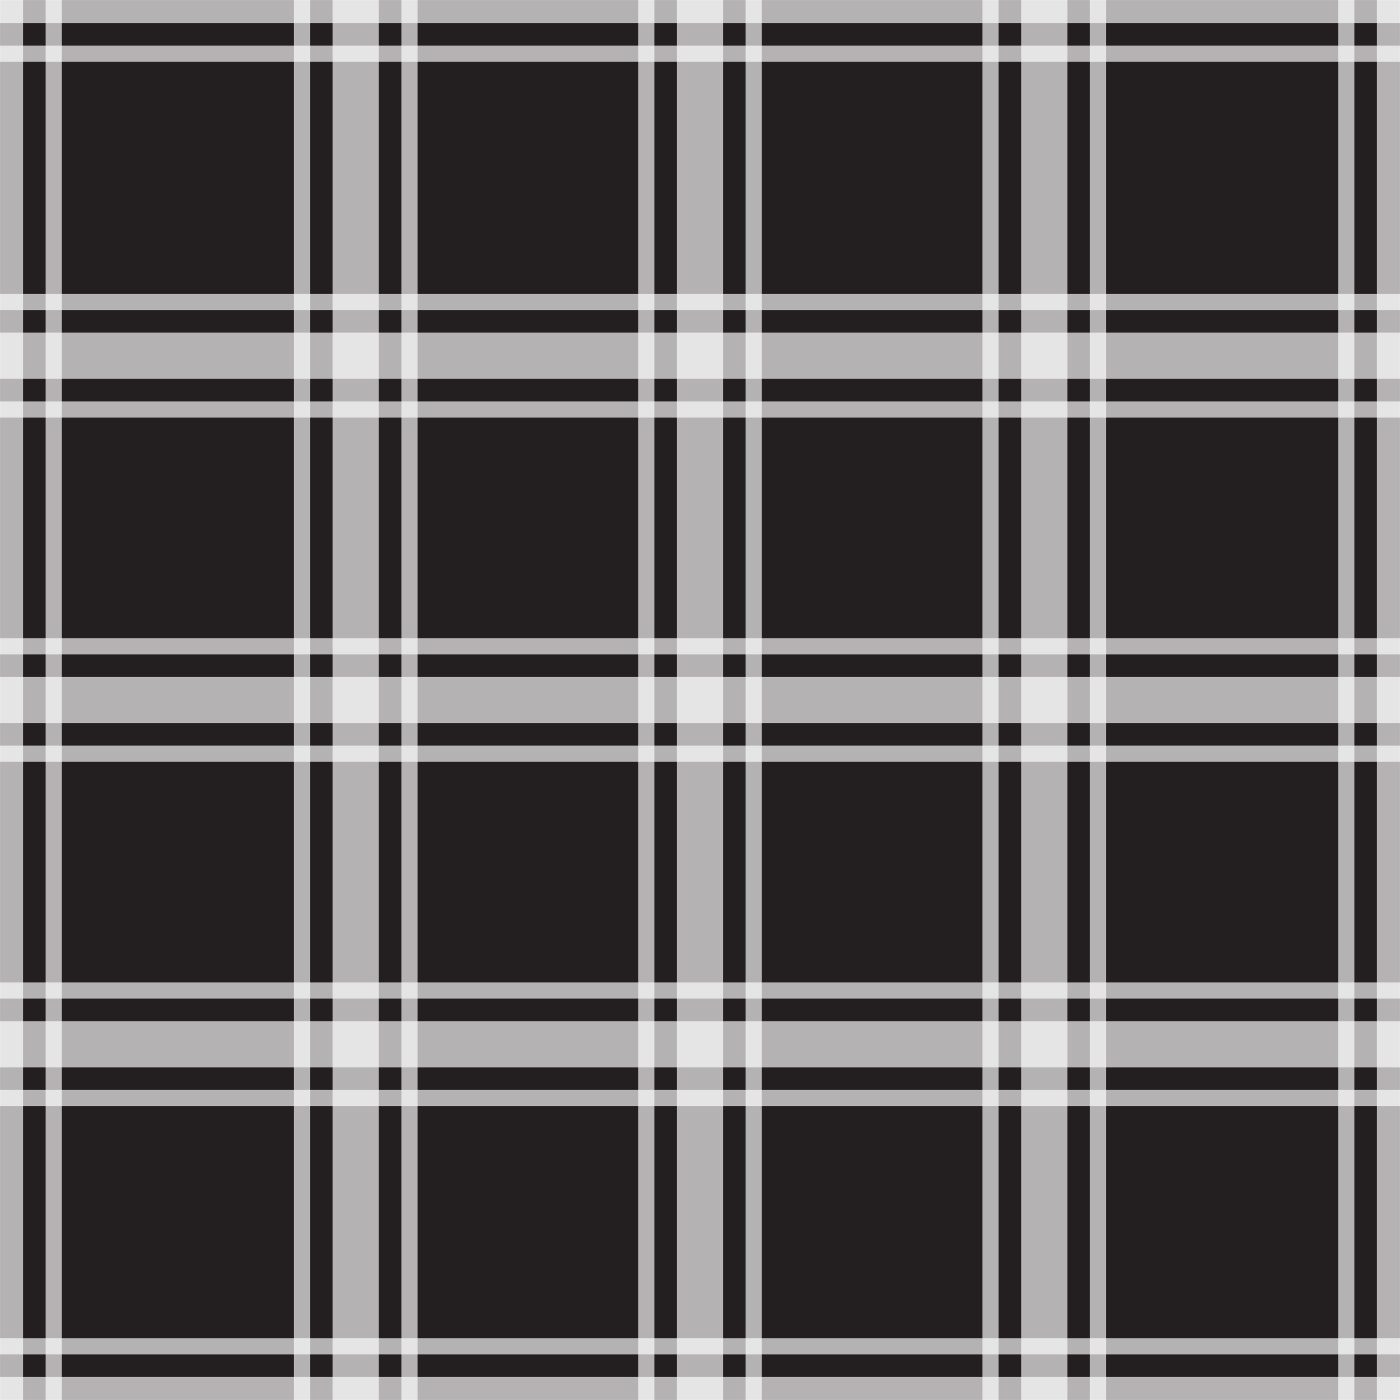 Black Plaid Pattern Images  Free Download on Freepik